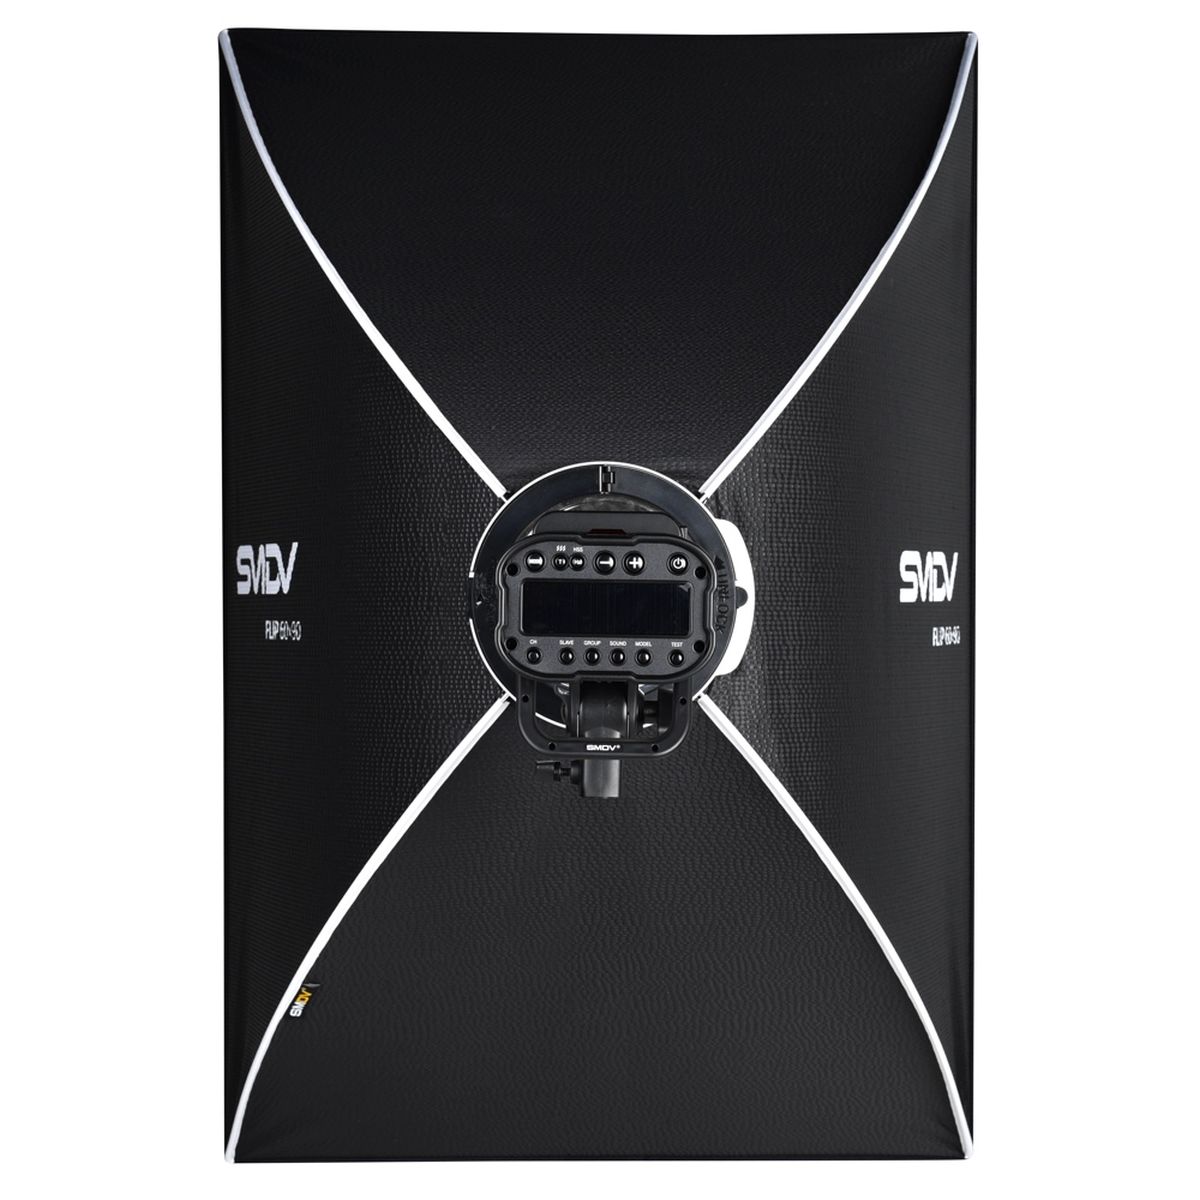 SMDV Speedbox-Flip 60 x 90